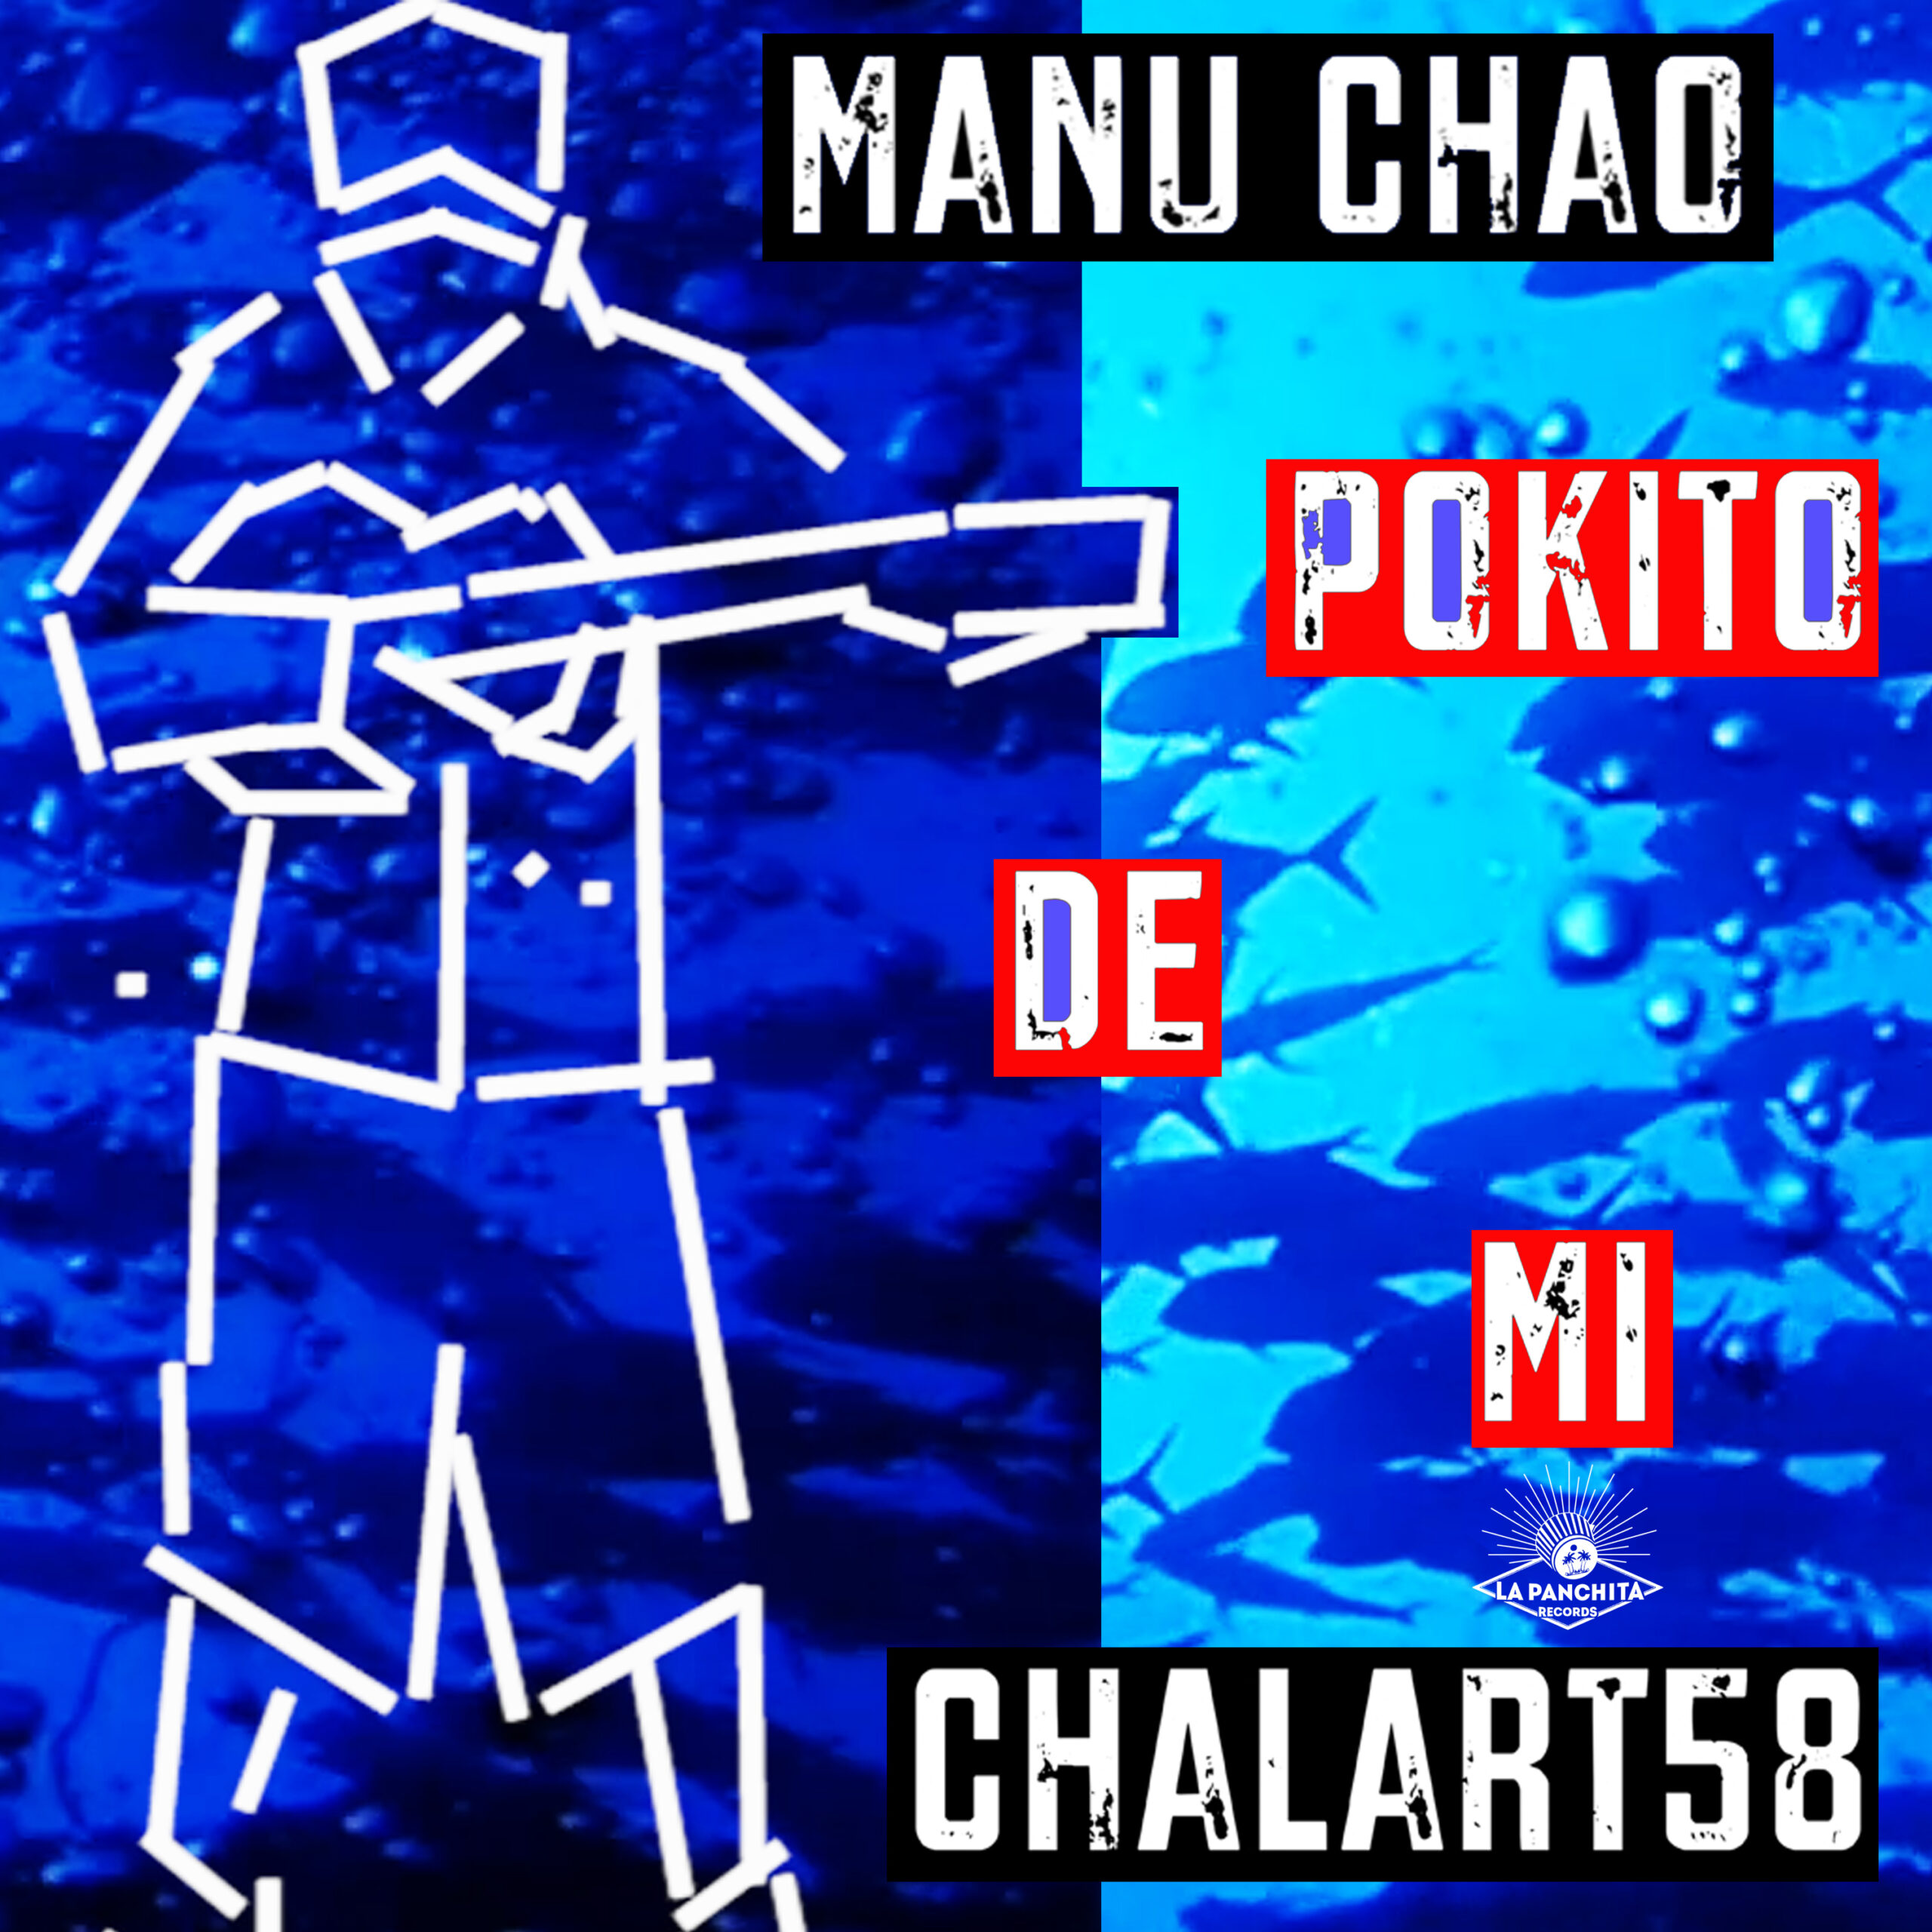 Pokito de mi, Manu Chao i Chalart58